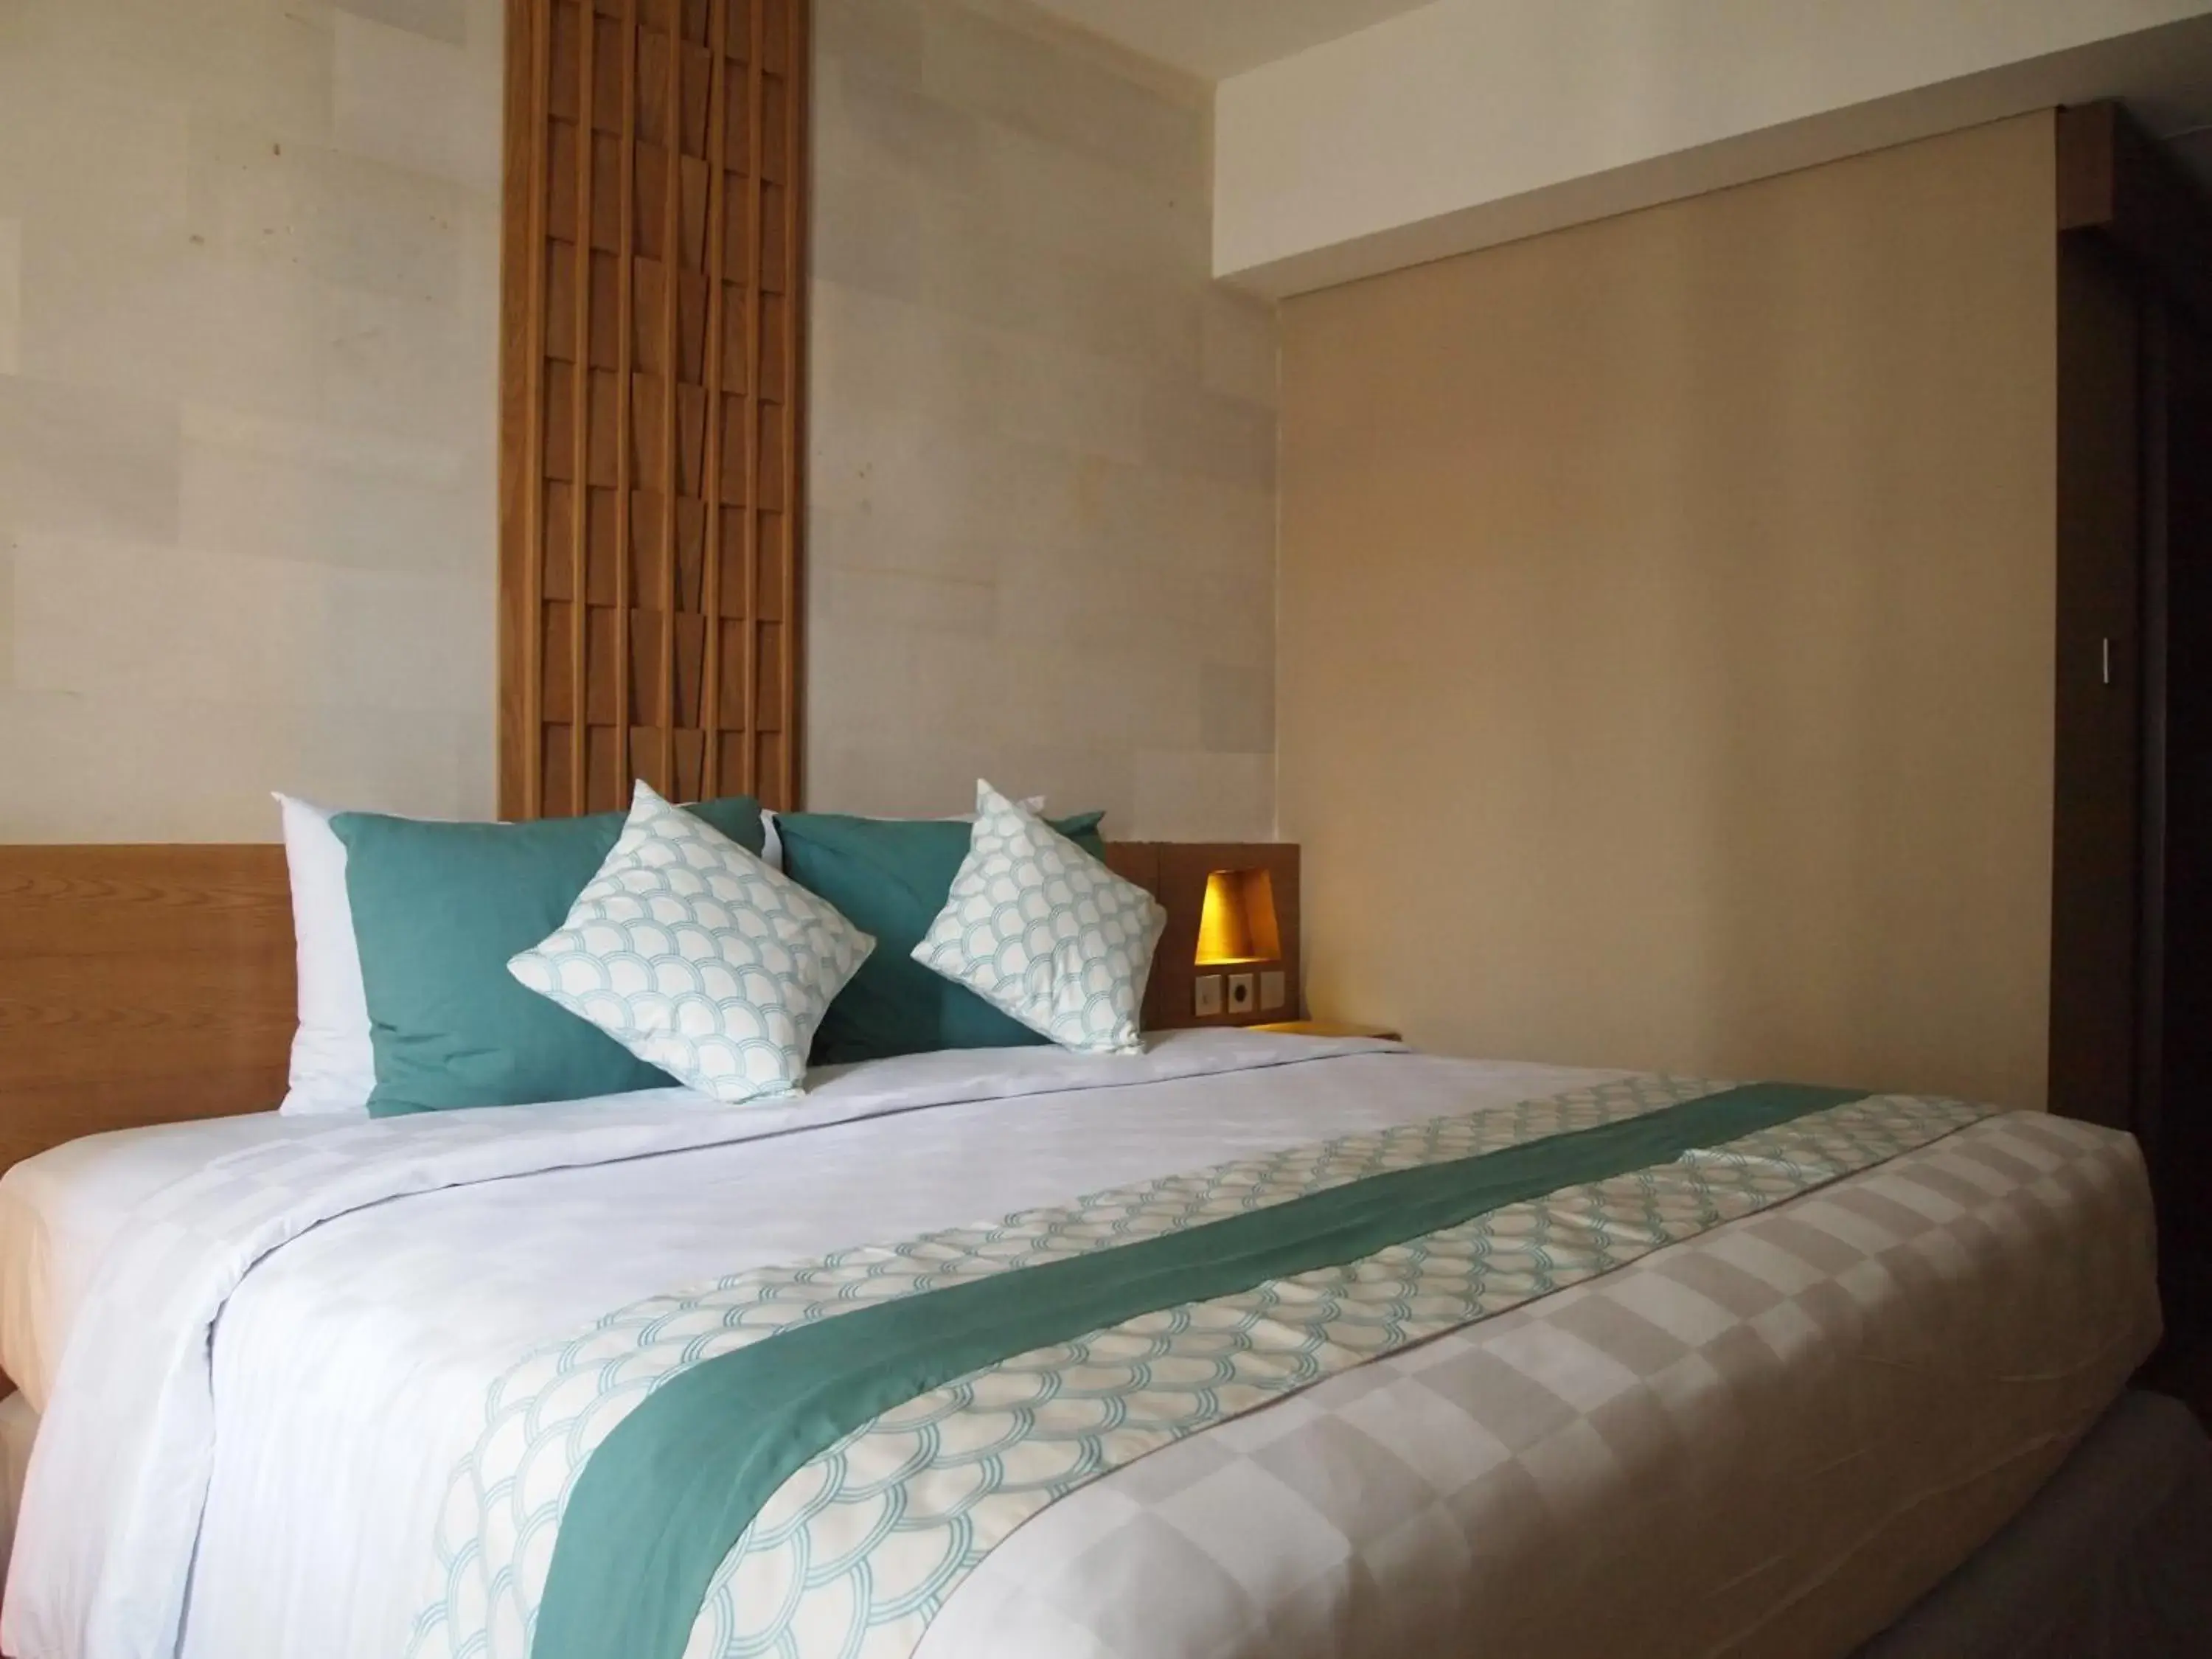 Bedroom, Bed in Bedrock Hotel Kuta Bali